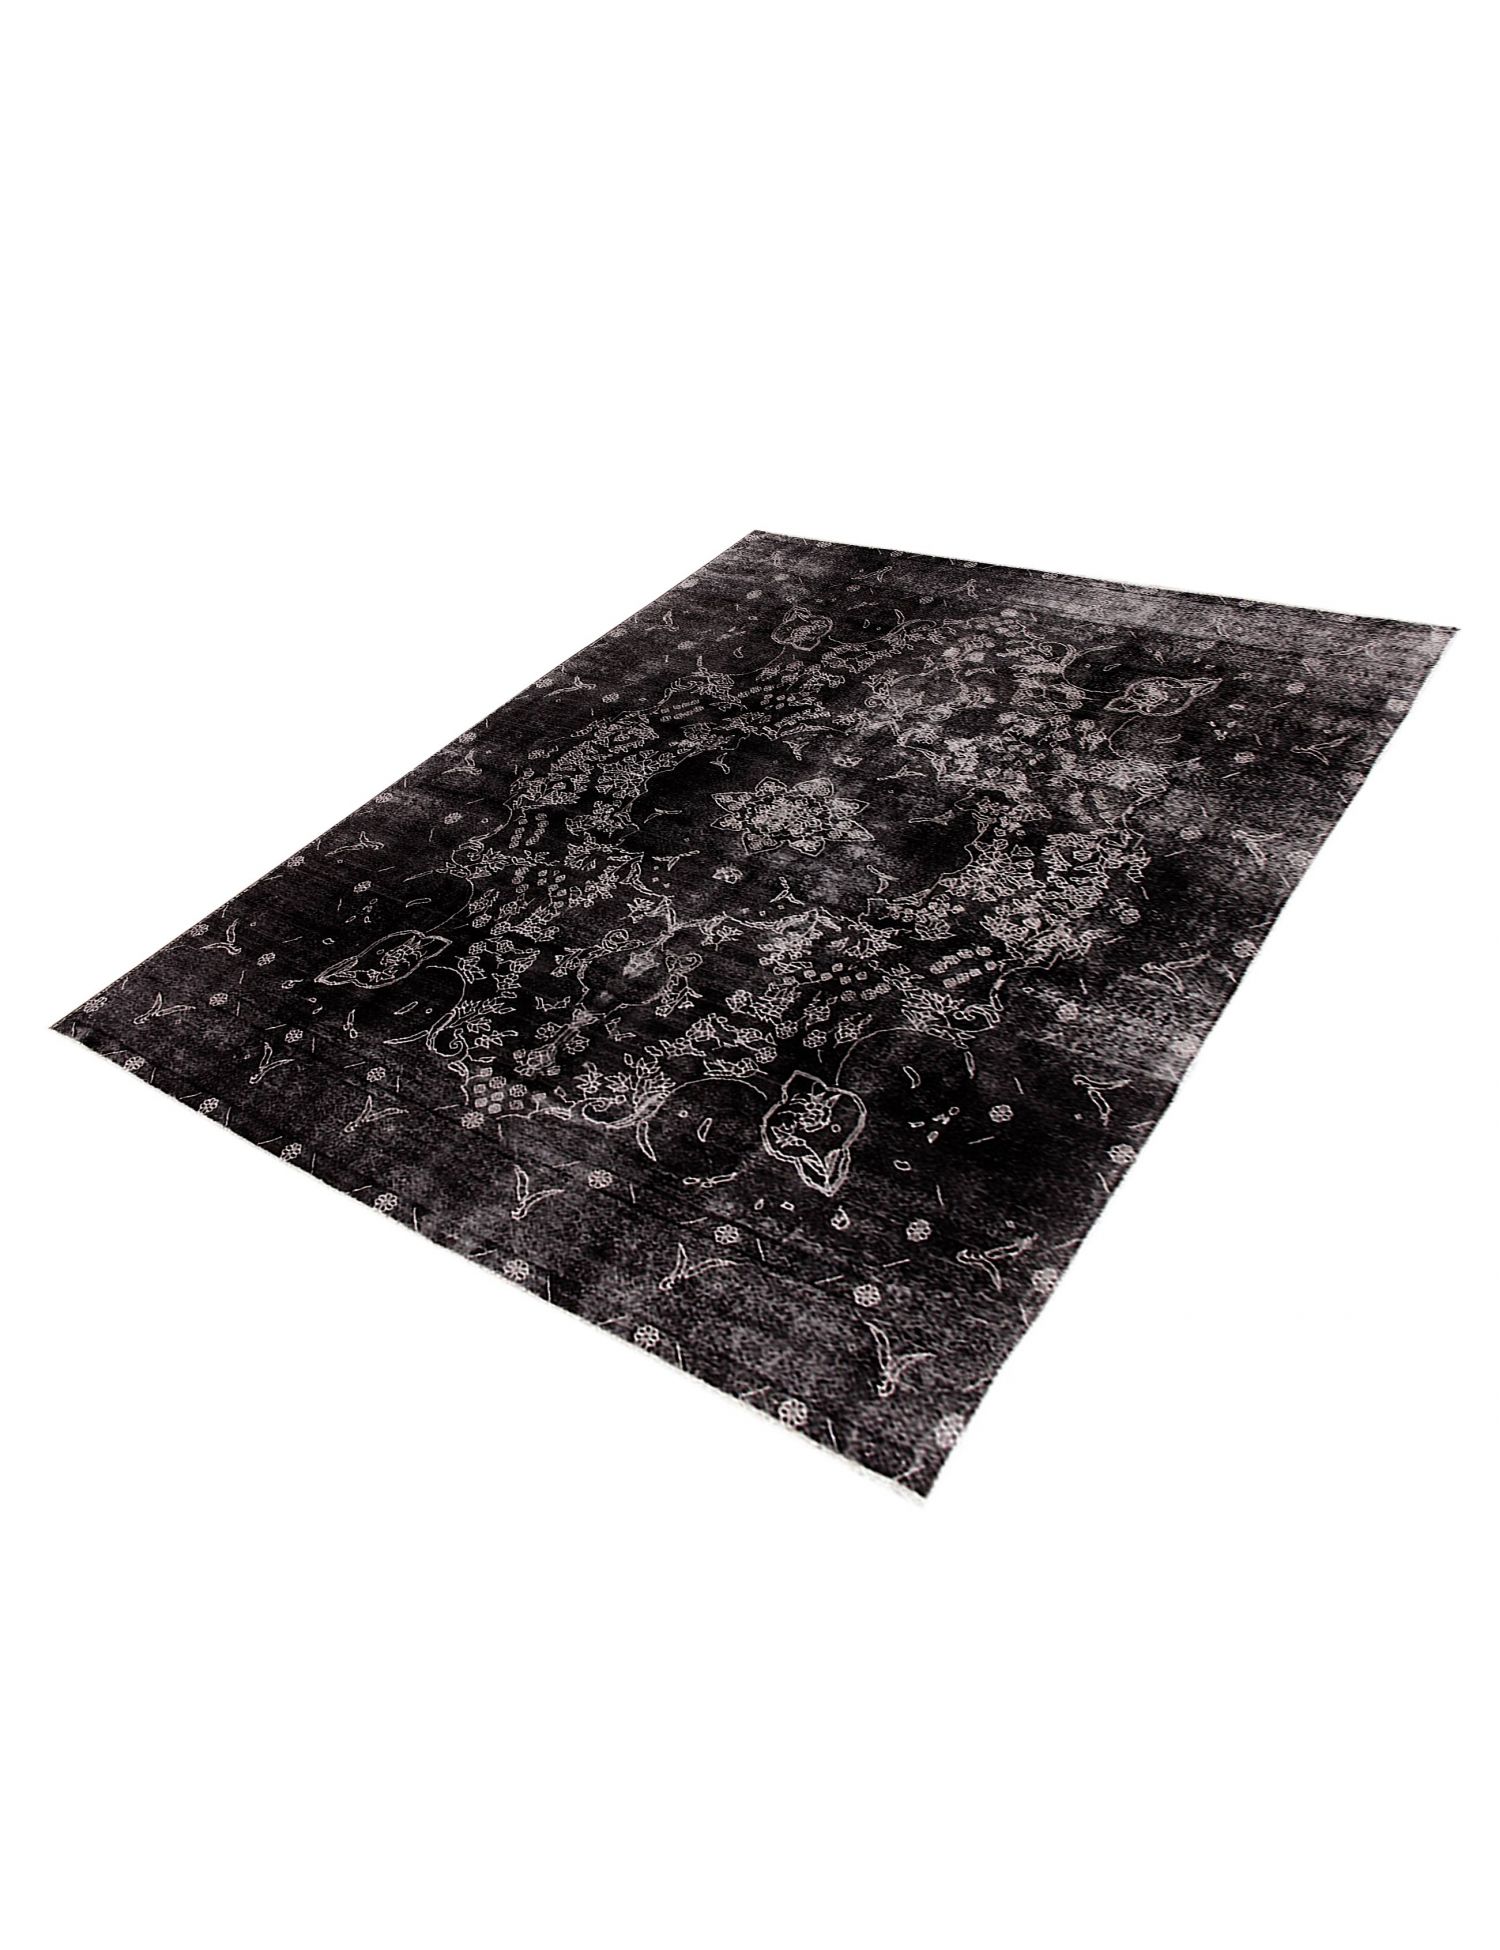 Persian Vintage Carpet  black <br/>383 x 295 cm